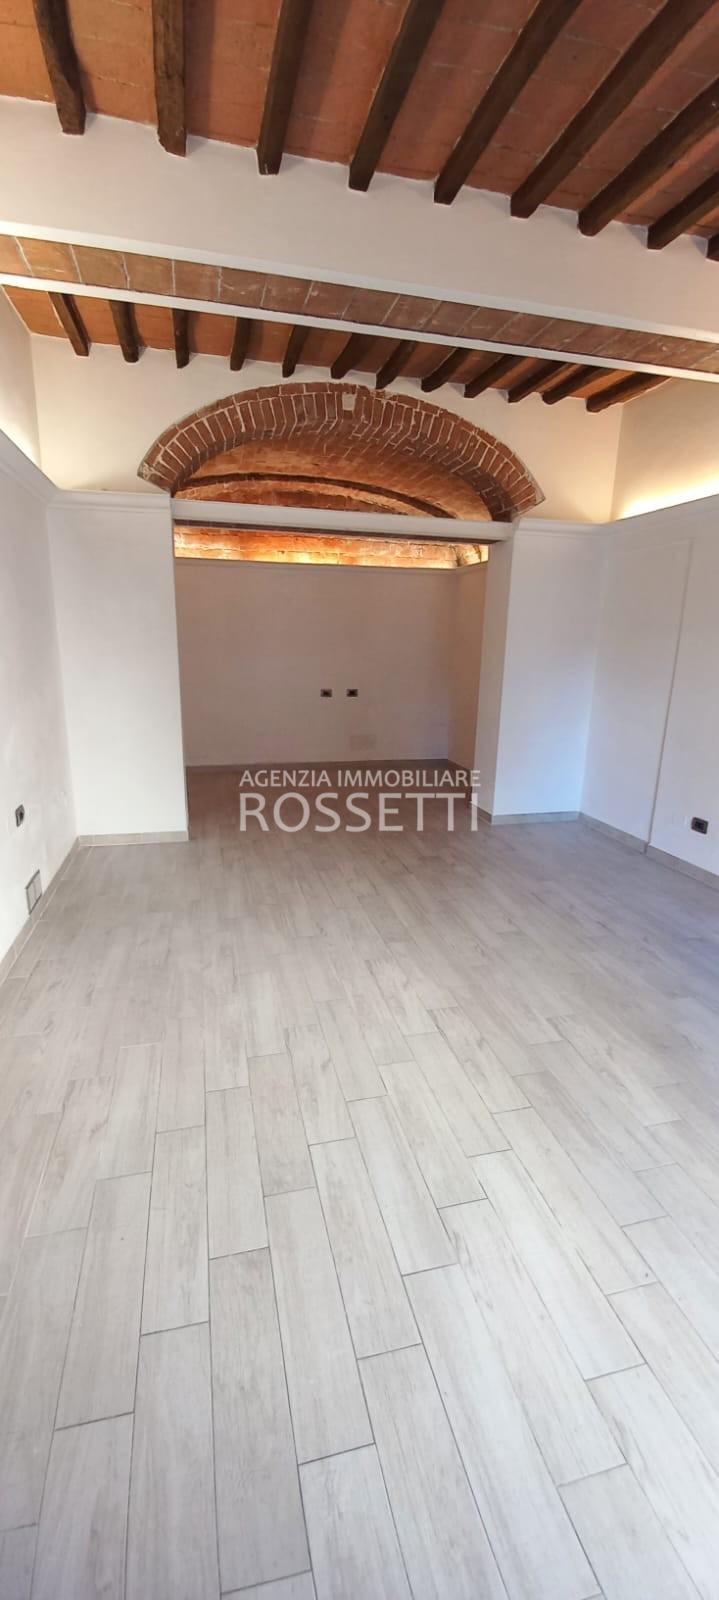 Ufficio / Studio in vendita a Vinci, 1 locali, prezzo € 68.000 | PortaleAgenzieImmobiliari.it